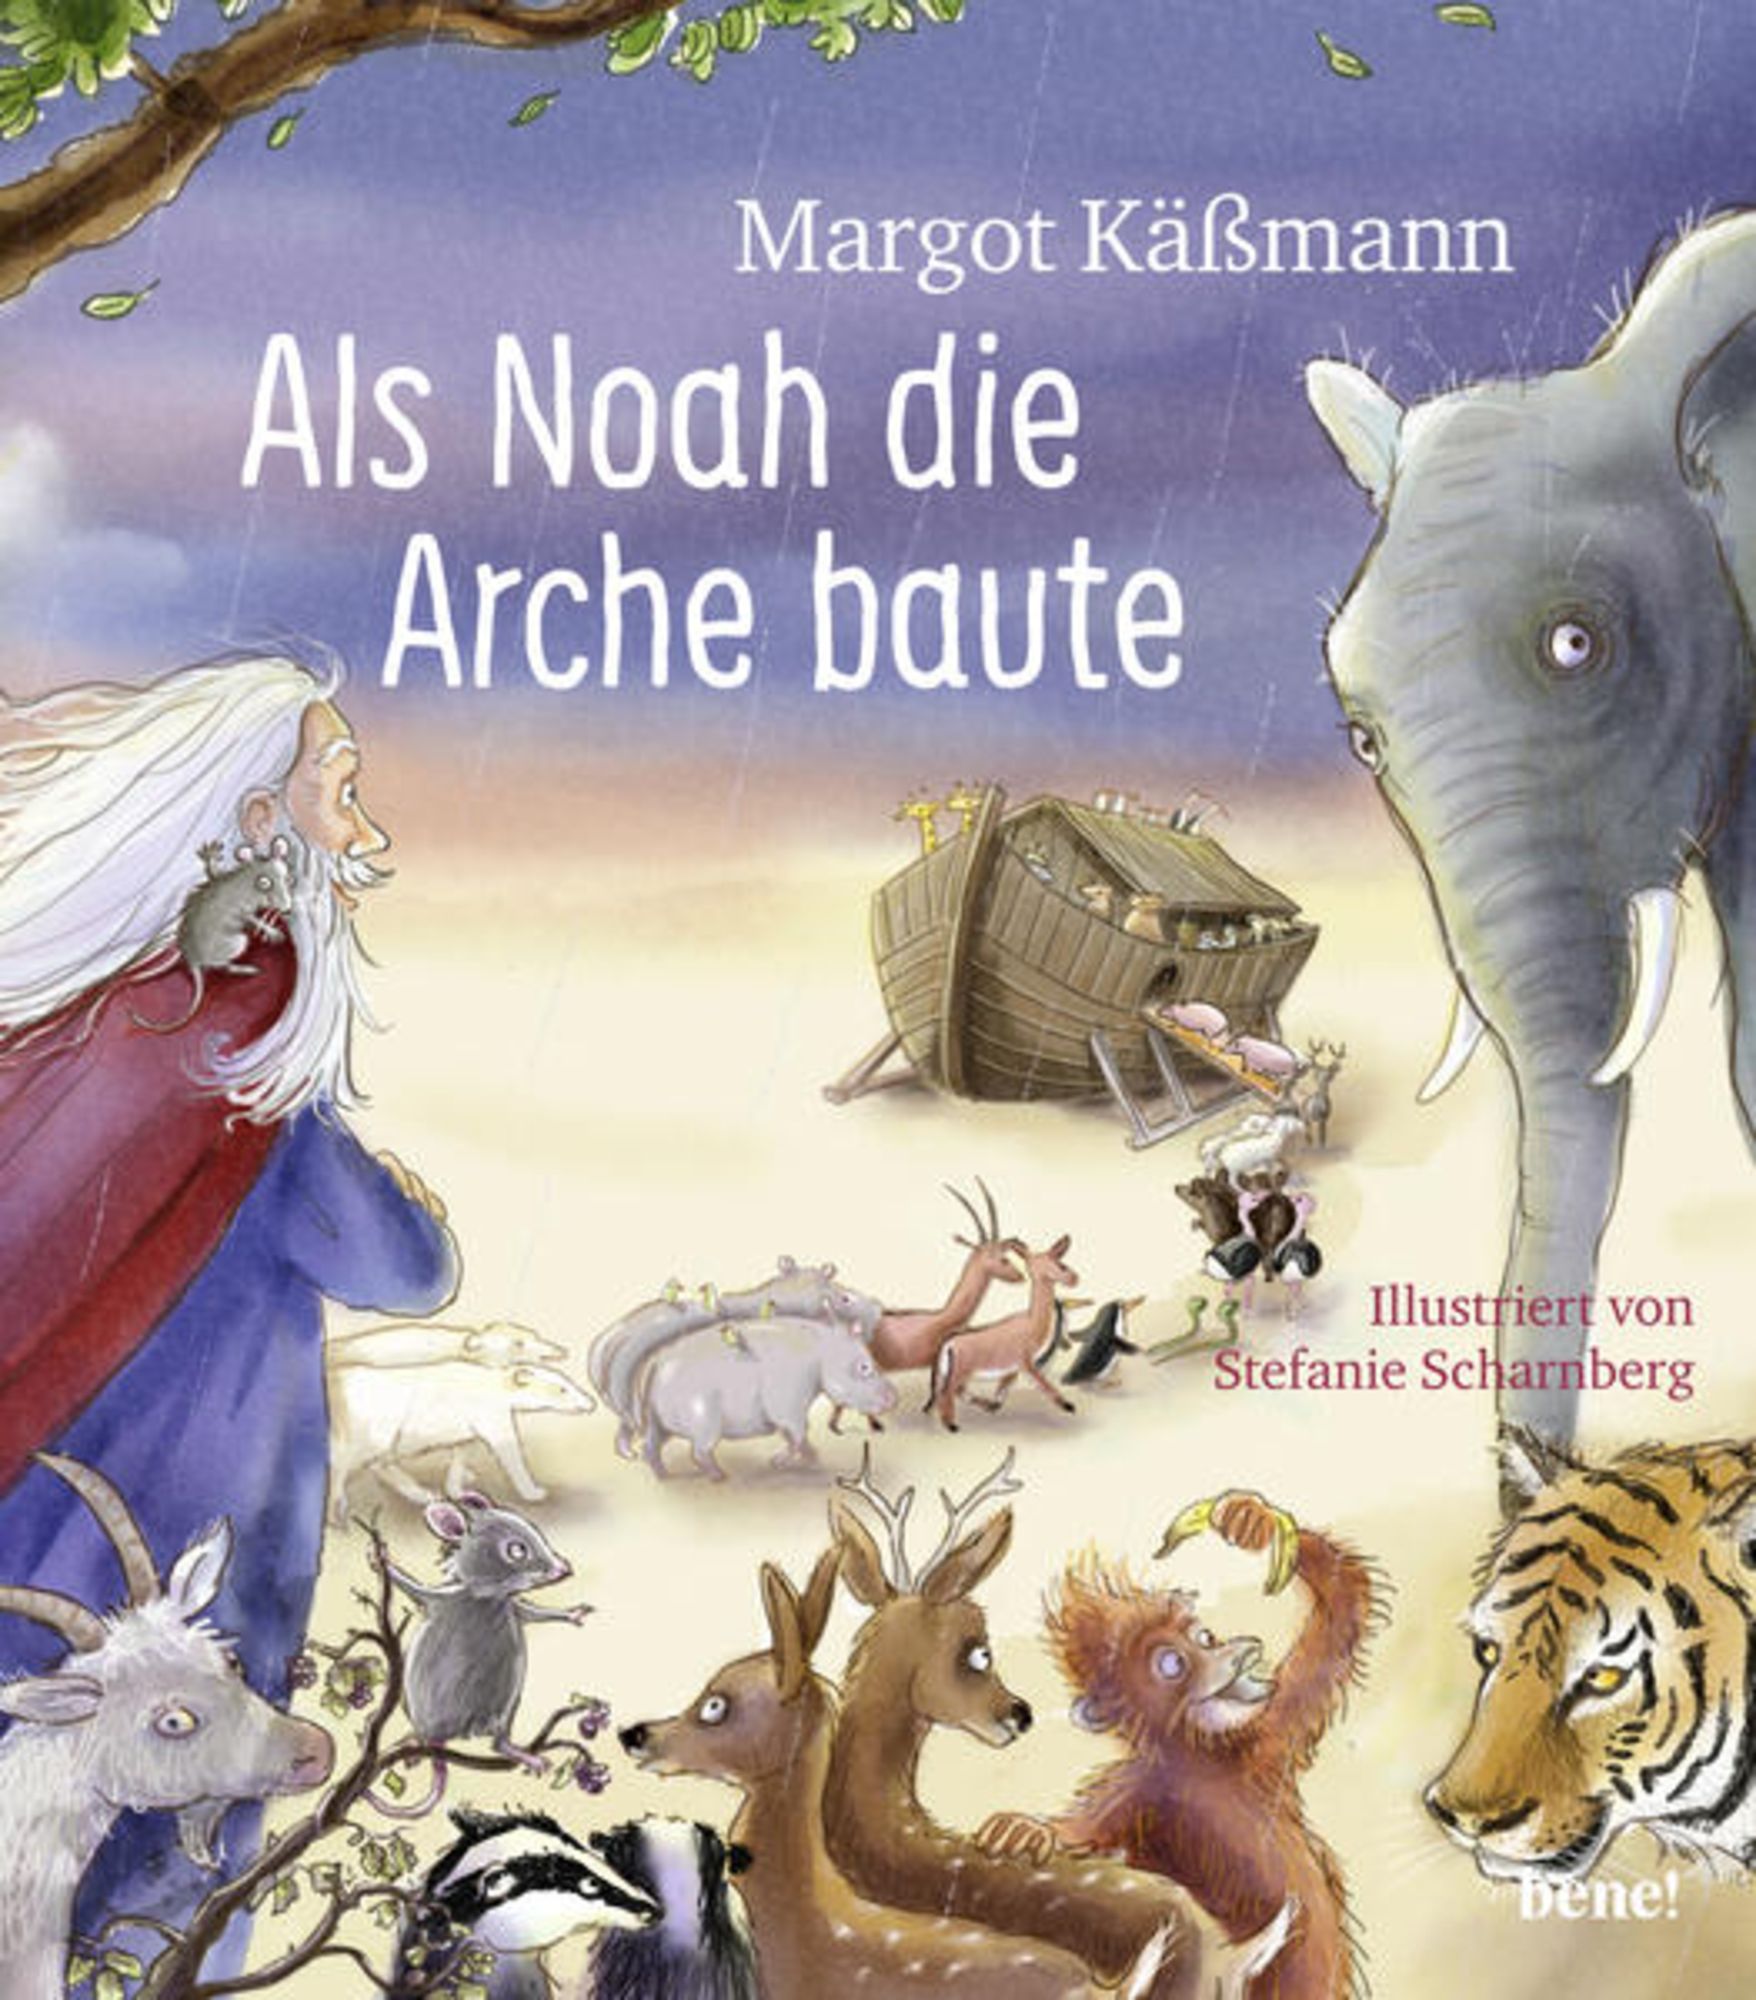 Kässmann\' ein ab von \'978-3-96340-126-8\' Als für Noah - 5 Kinder \'Margot Bilderbuch baute die - Buch Arche – Jahren\'